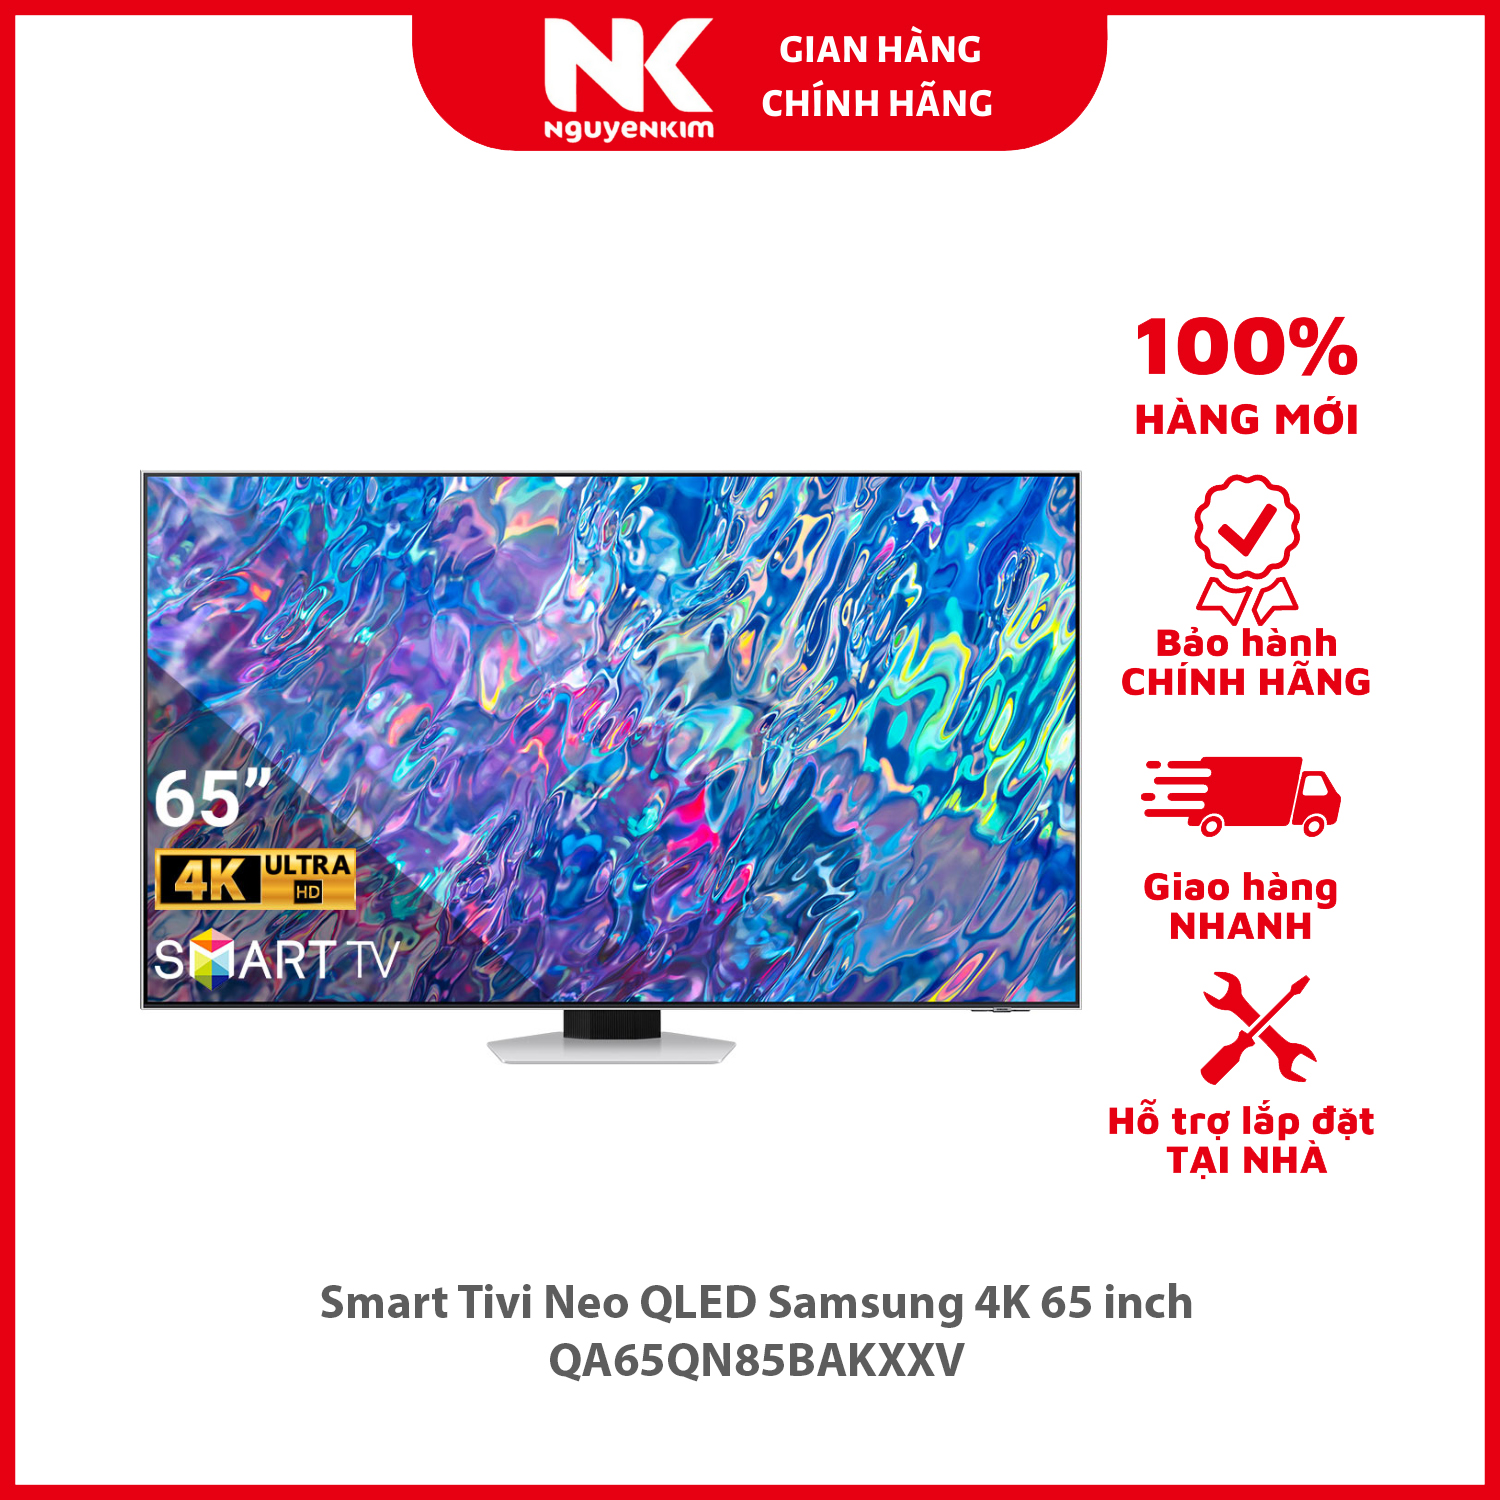 Smart Tivi Neo QLED Samsung 4K 65 inch QA65QN85BAKXXV - Hàng chính hãng